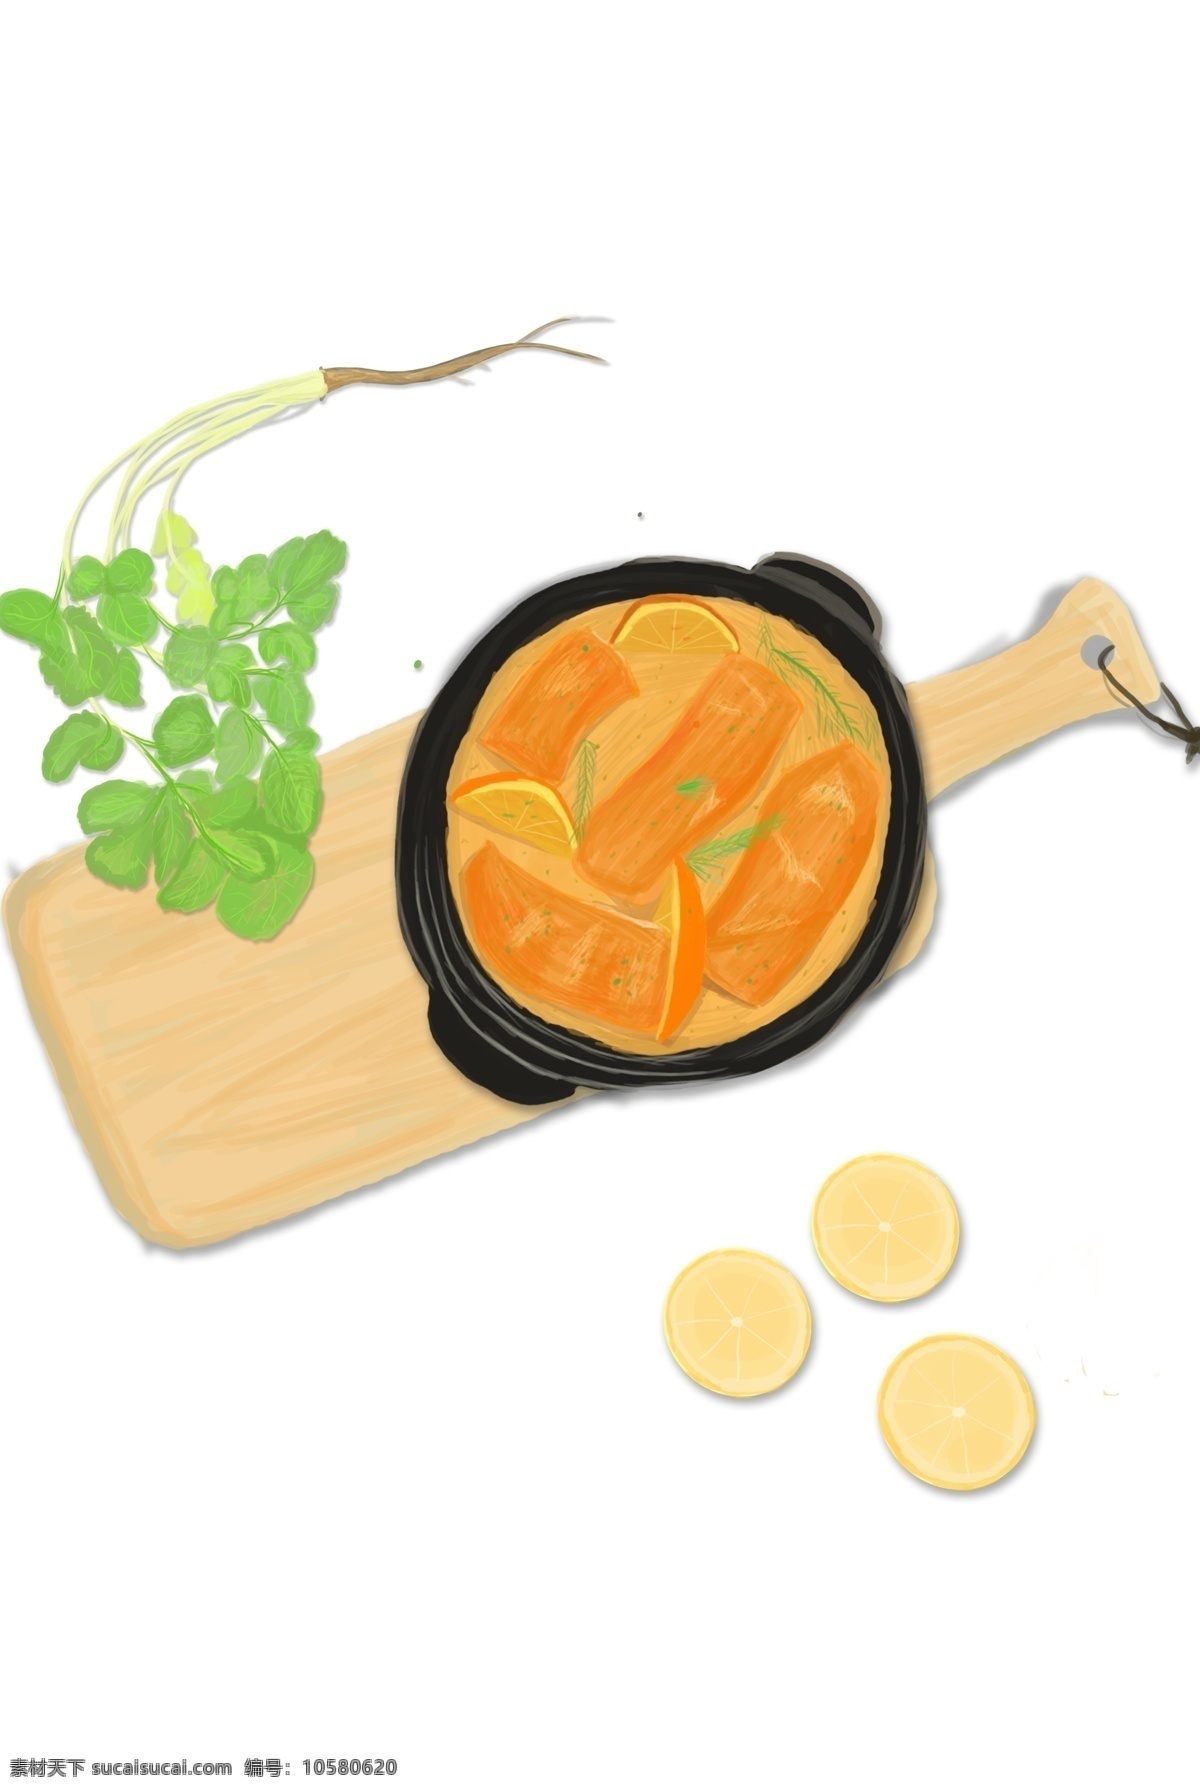 清香 手绘 炖 汤 装饰 元素 蔬菜 炖汤 装饰元素 木板 柠檬 食物元素 手绘元素